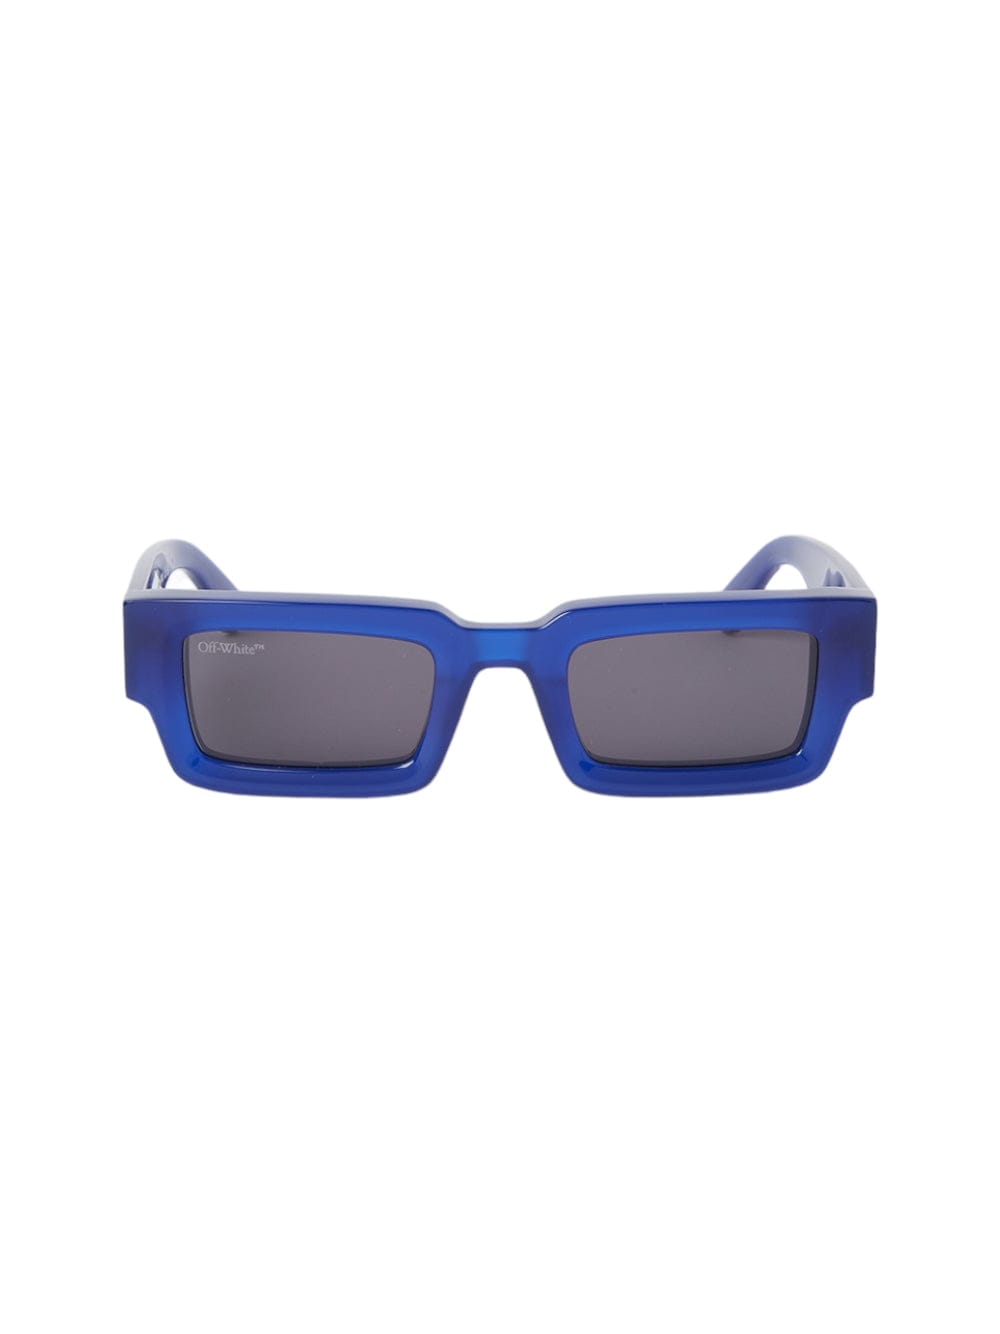 Lecce - Blu Sunglasses